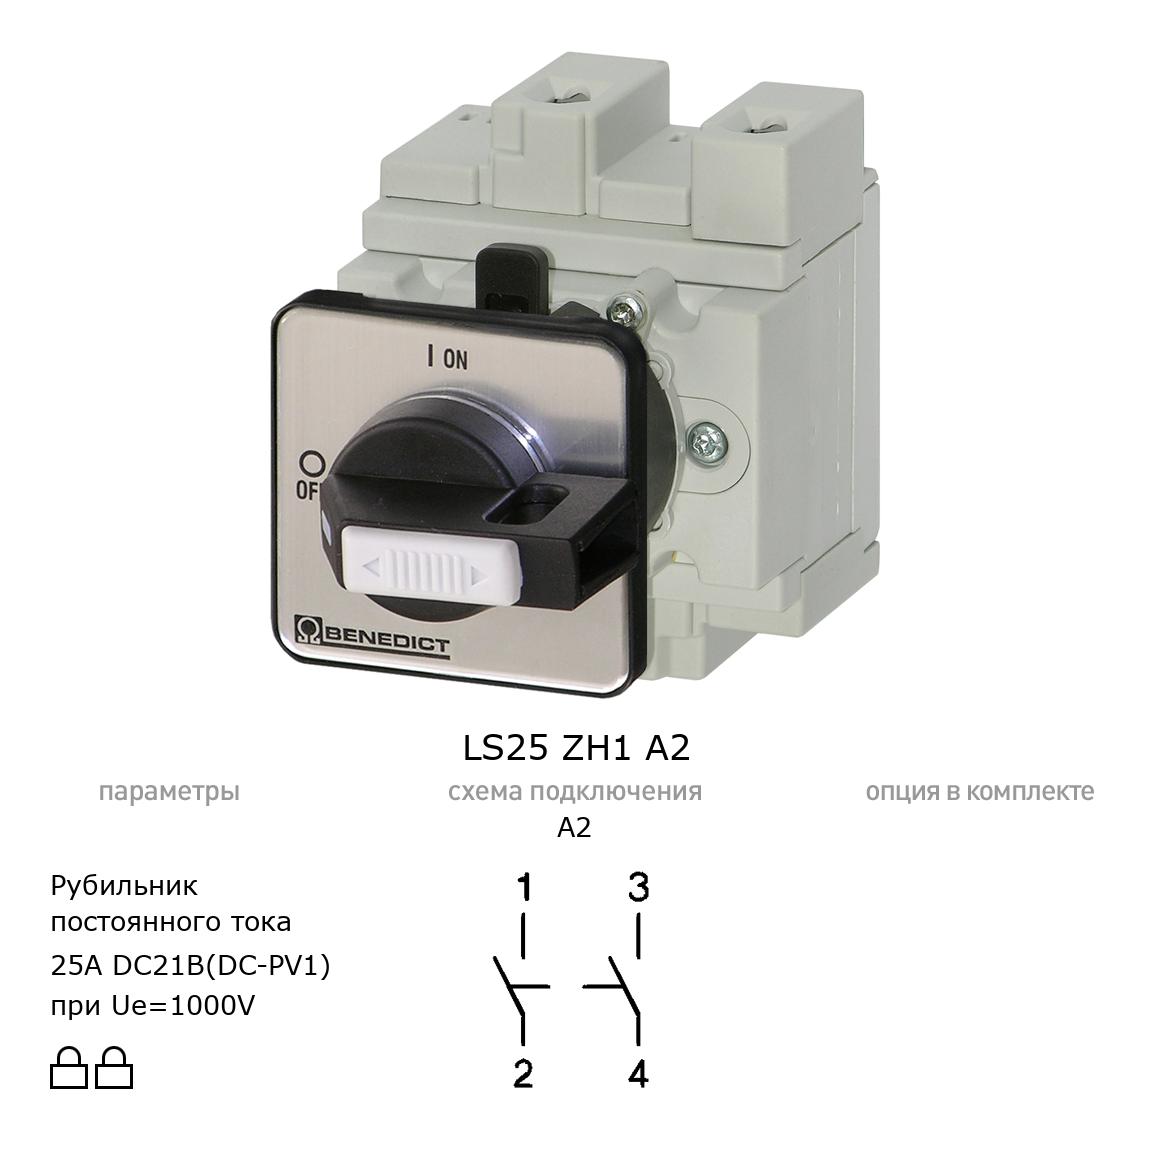 Выключатель нагрузки / рубильник для постоянного тока (DC) LS25 ZH1 A2 BENEDICT